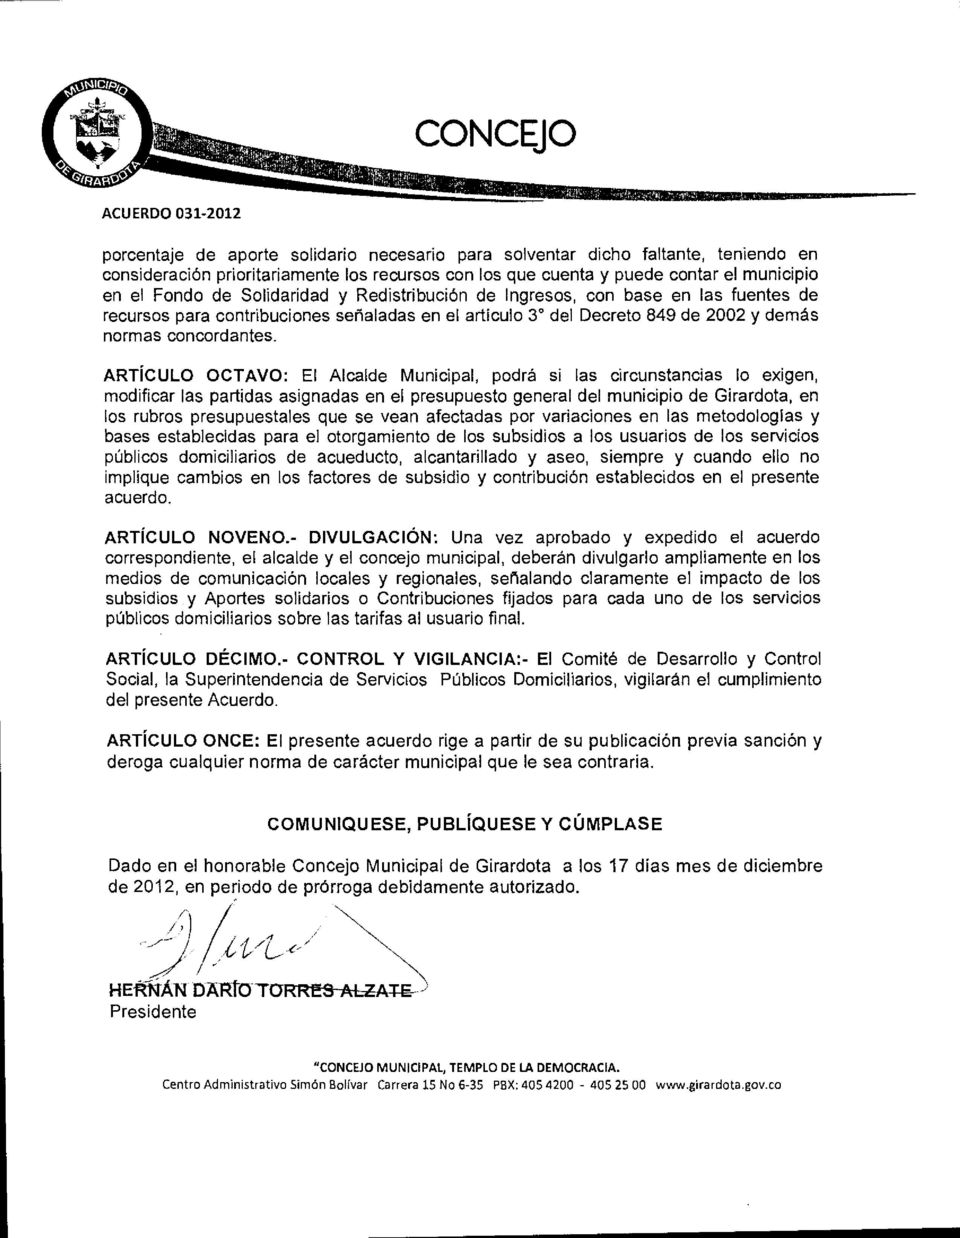 ARTÍCULO OCTAVO: El Alcalde Municipal, podrá si las circunstancias lo exigen, modificar las partidas asignadas en el presupuesto general del municipio de Girardota, en los rubros presupuestales que